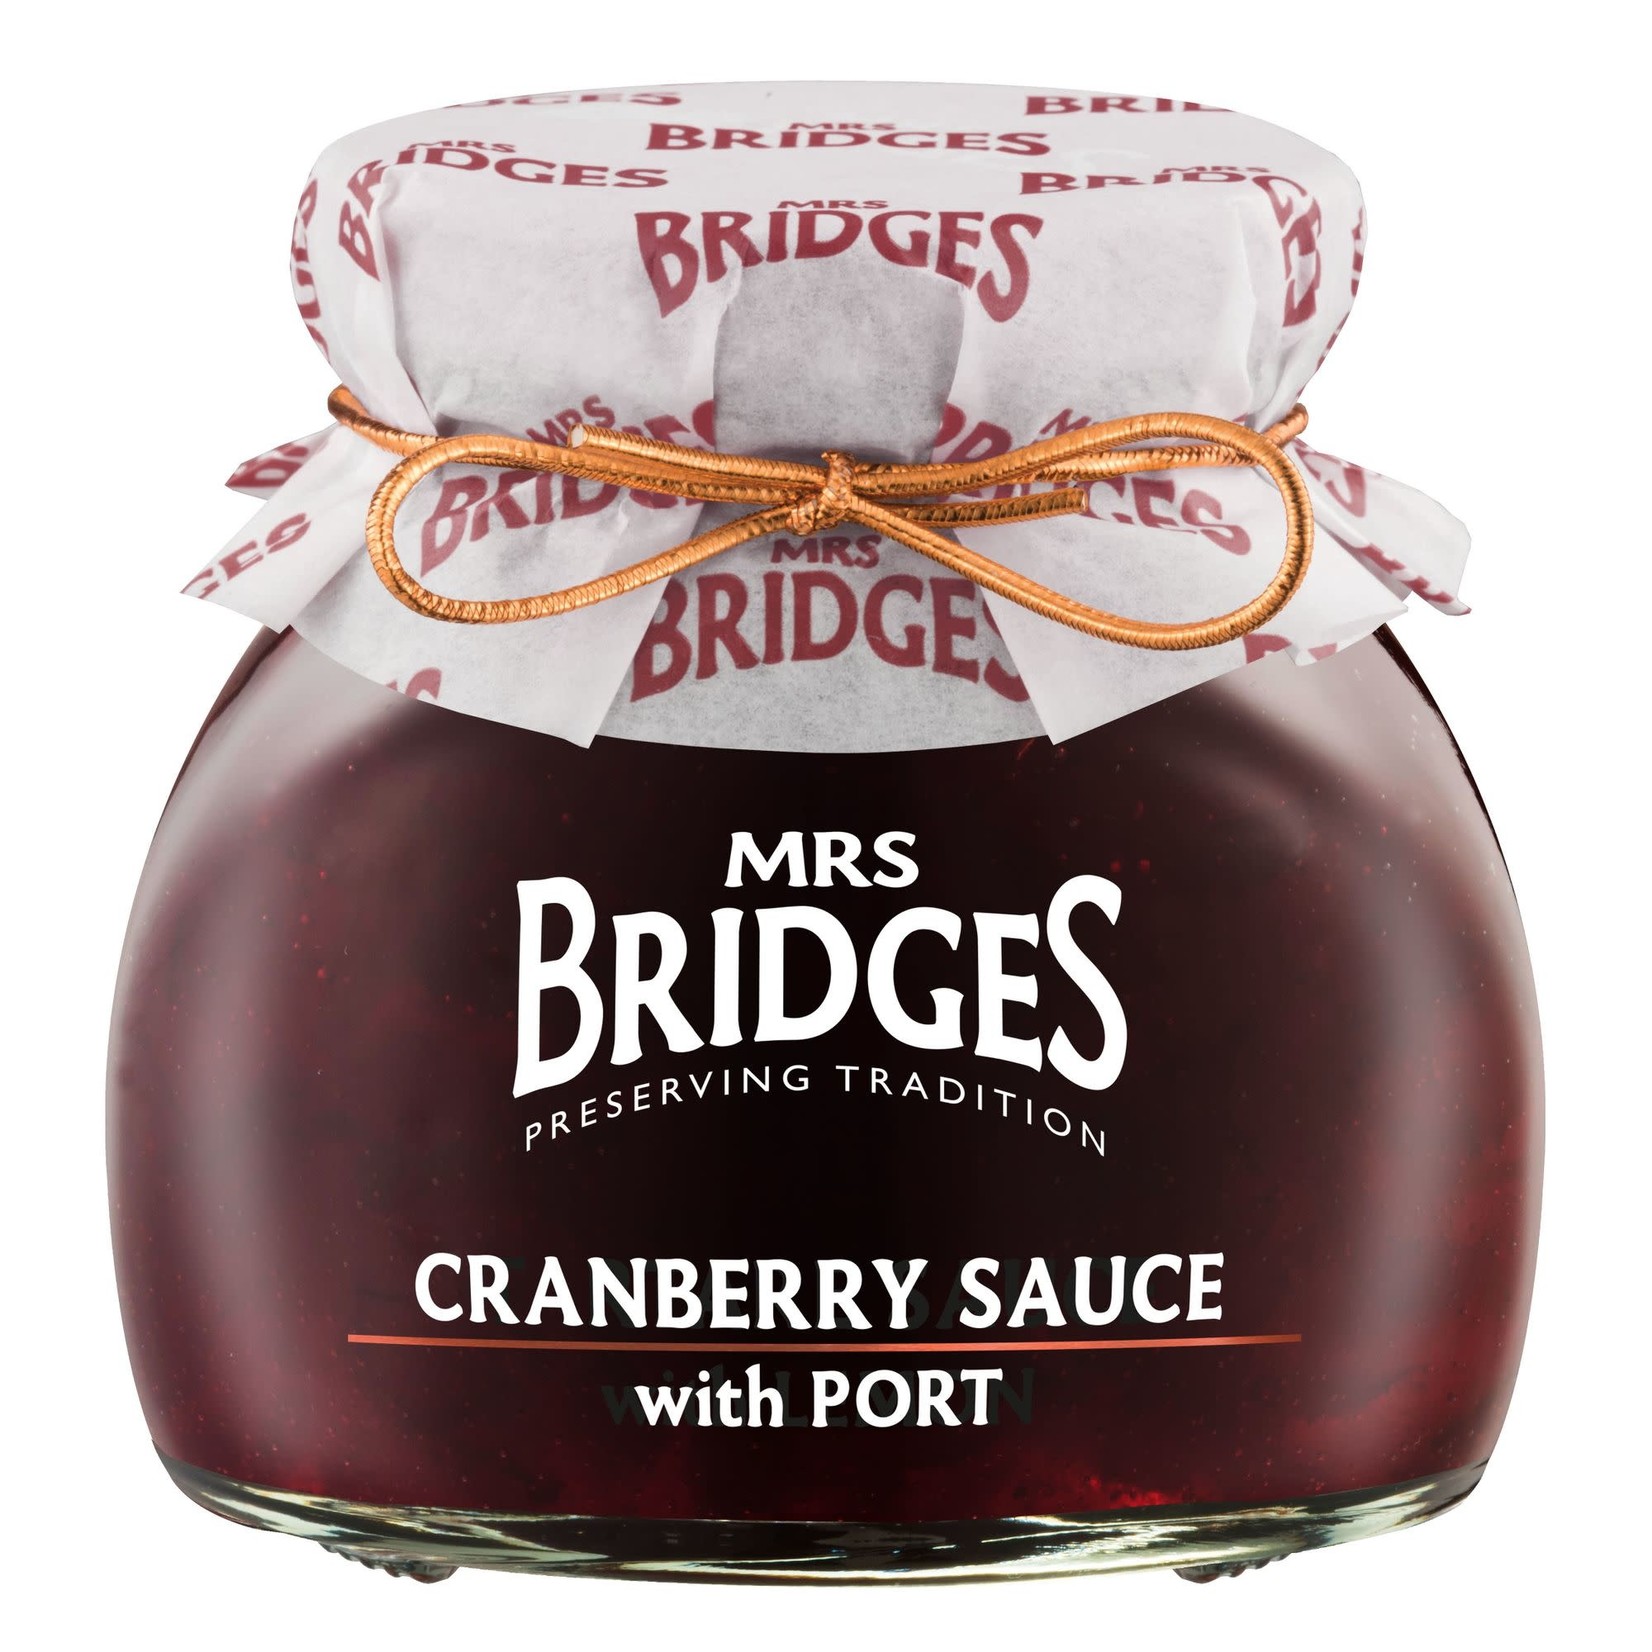 MRS BRIDGES MRS BRIDGES Cranberry Sauce with Port 250g